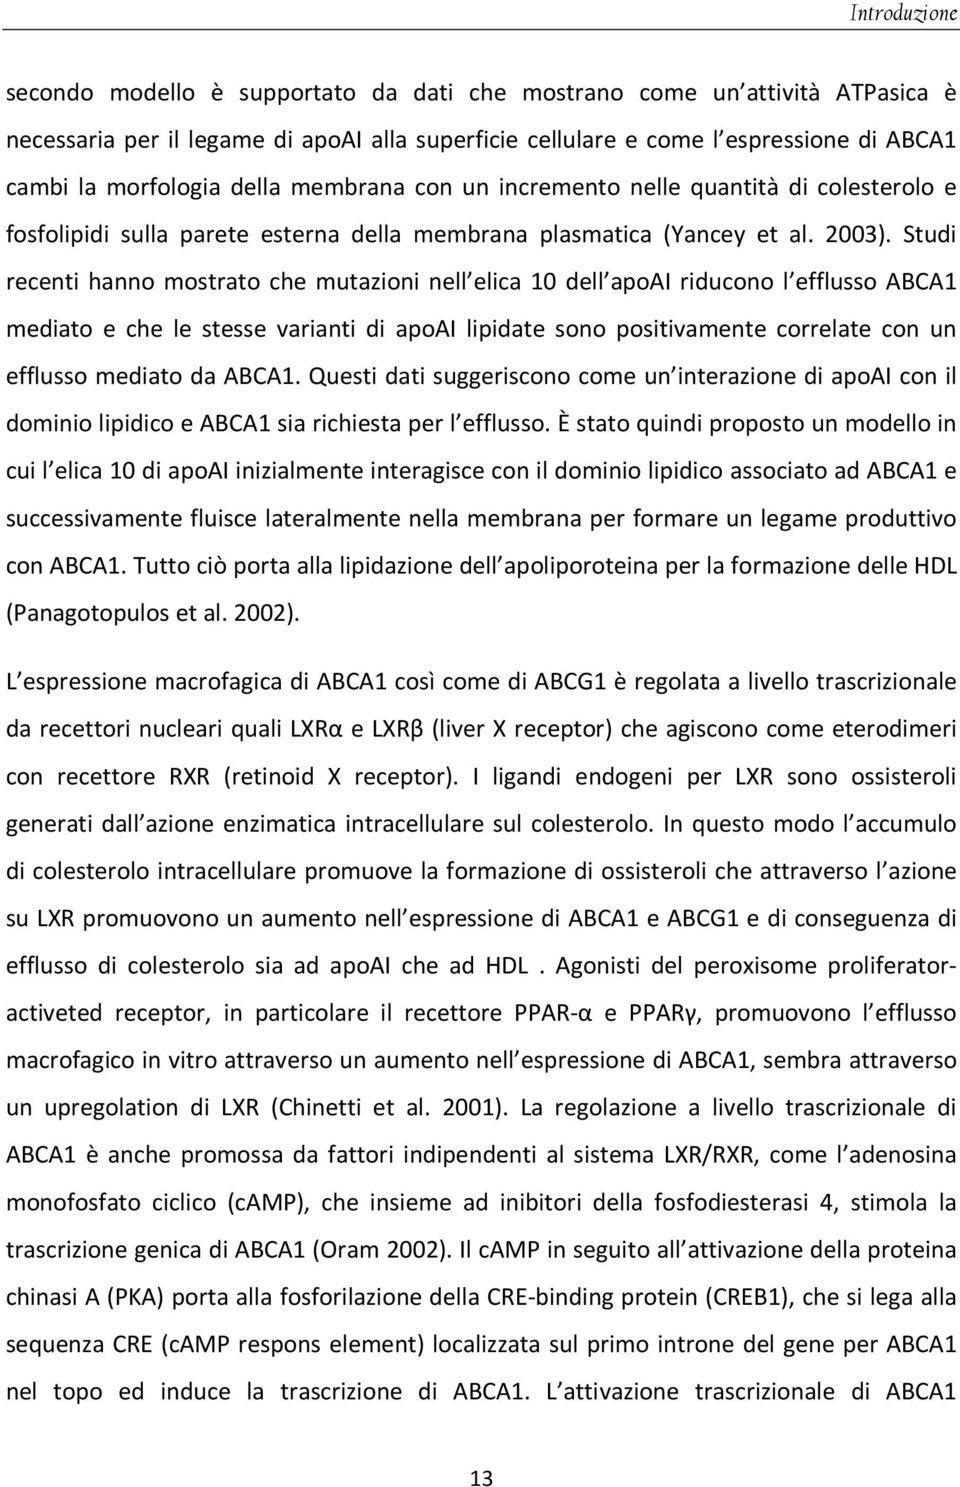 Studi recenti hanno mostrato che mutazioni nell elica 10 dell apoai riducono l efflusso ABCA1 mediato e che le stesse varianti di apoai lipidate sono positivamente correlate con un efflusso mediato